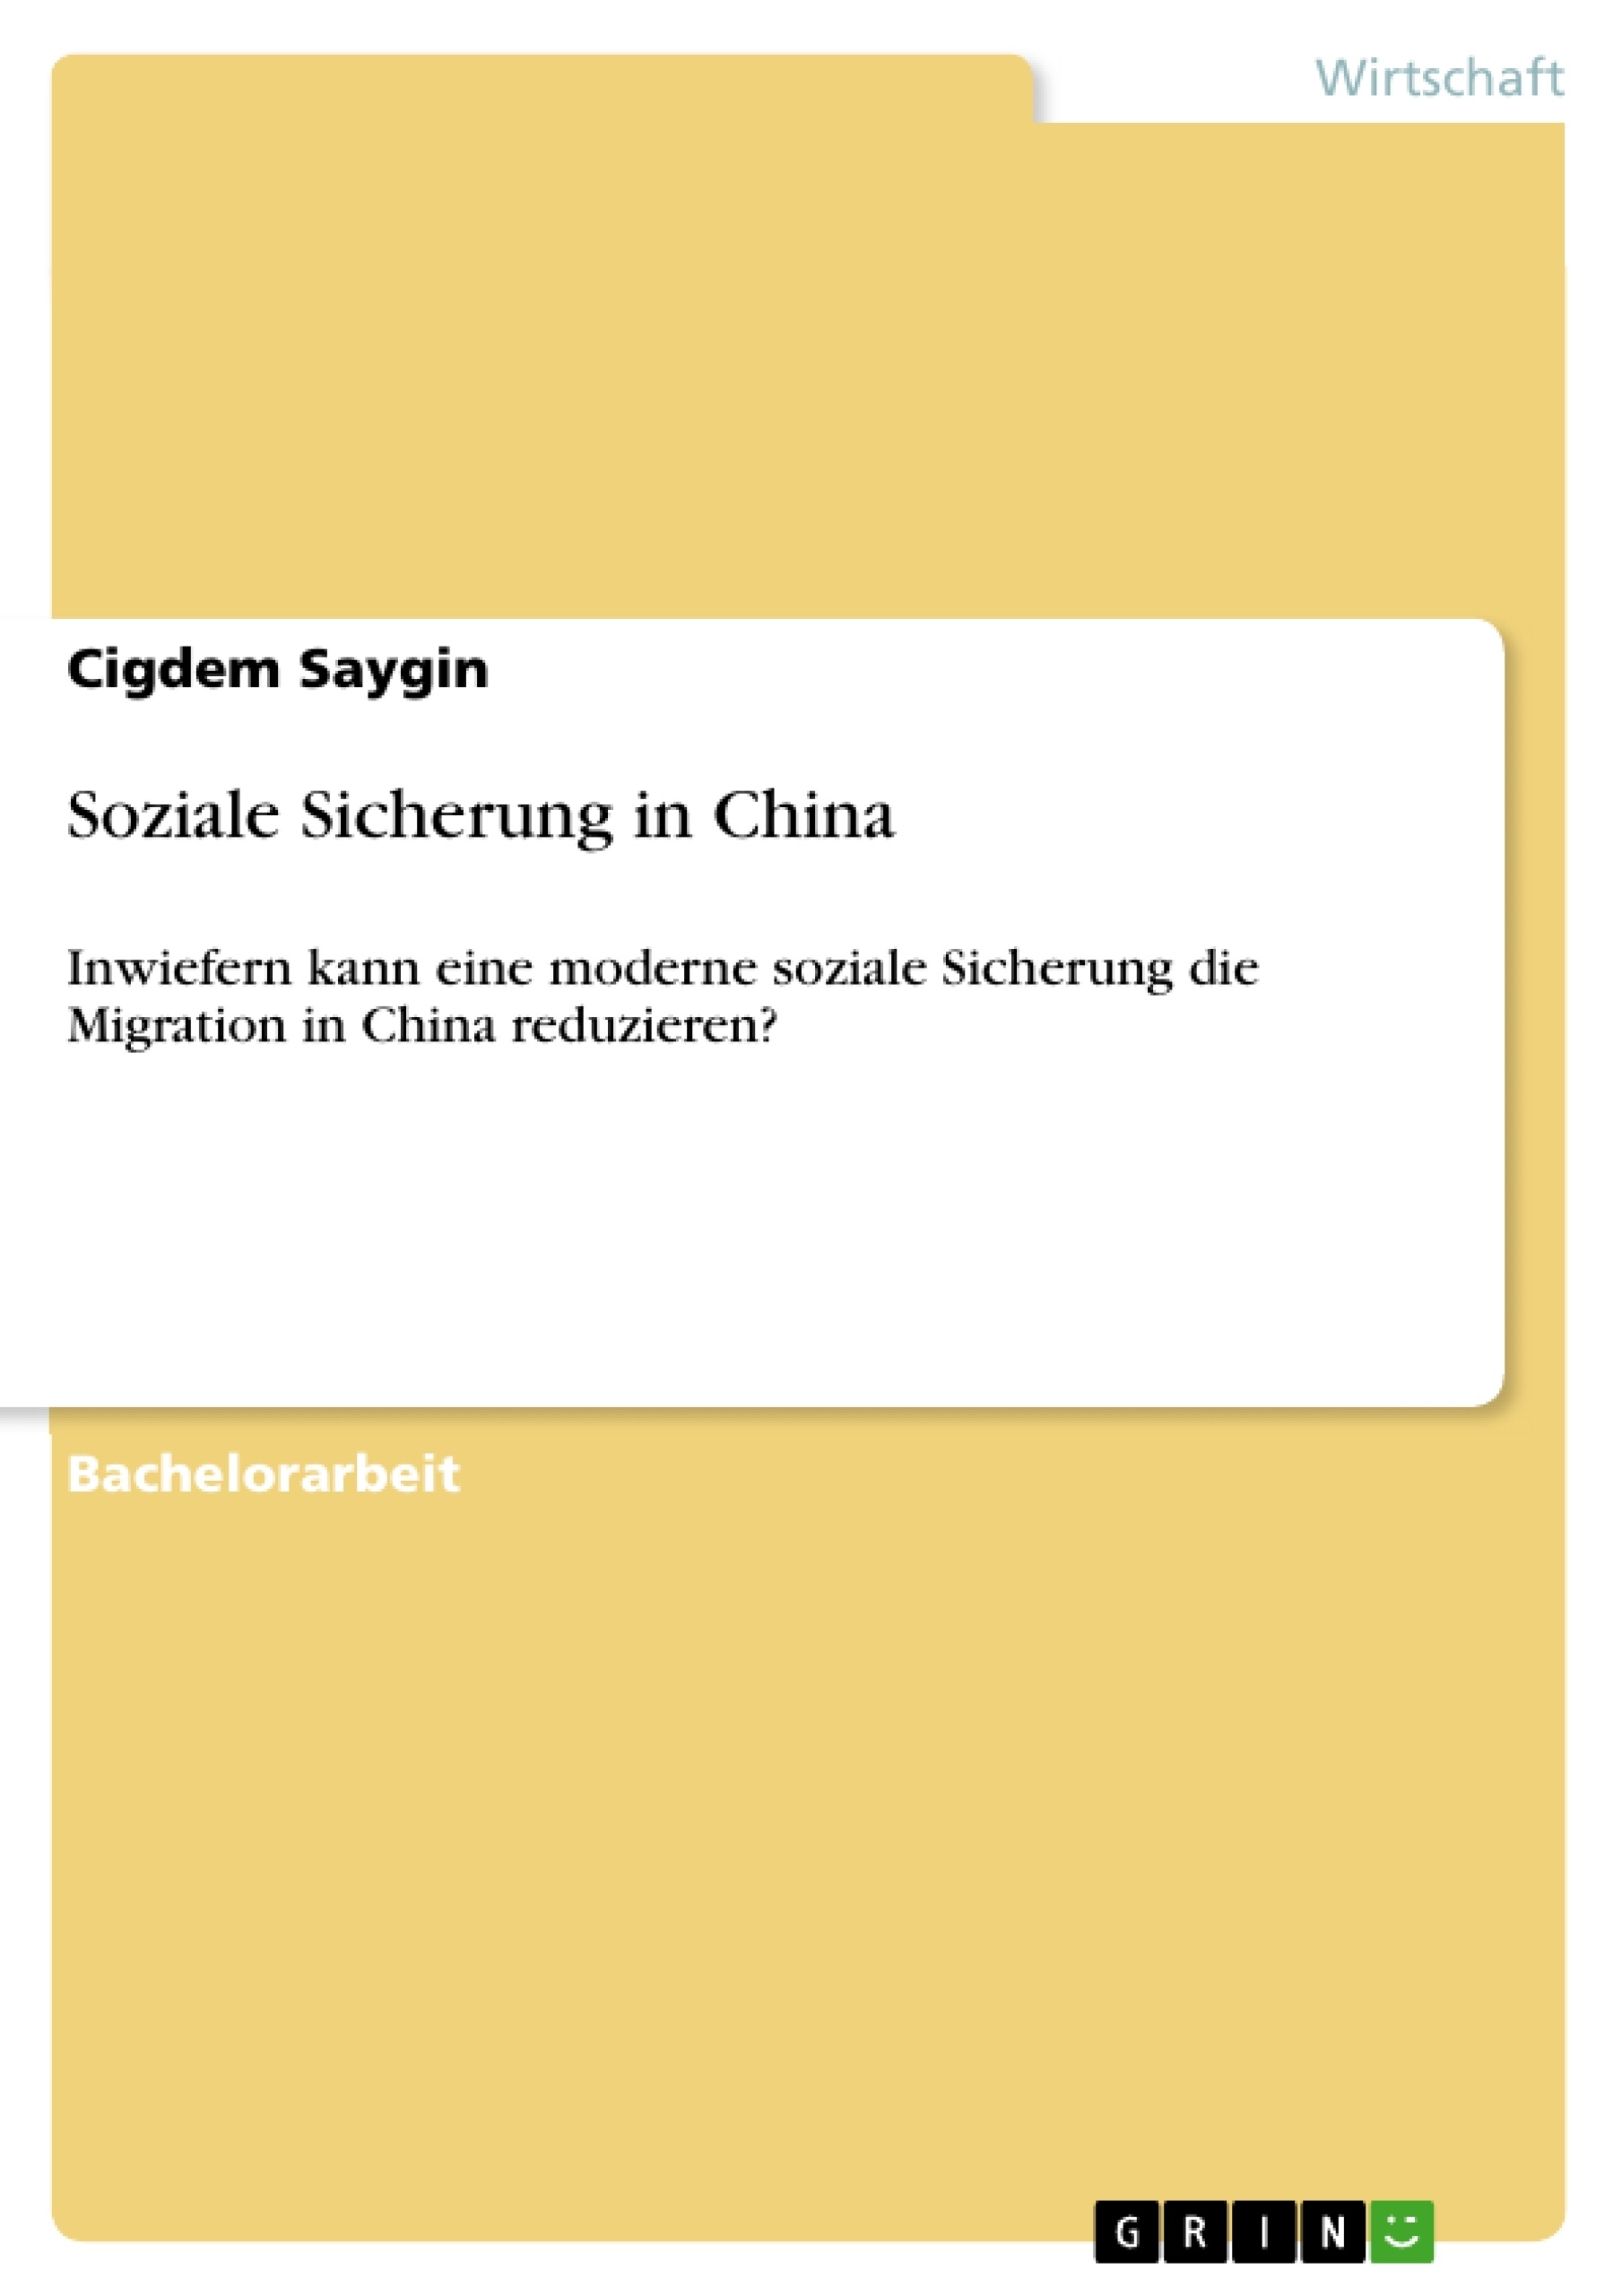 Título: Soziale Sicherung in China